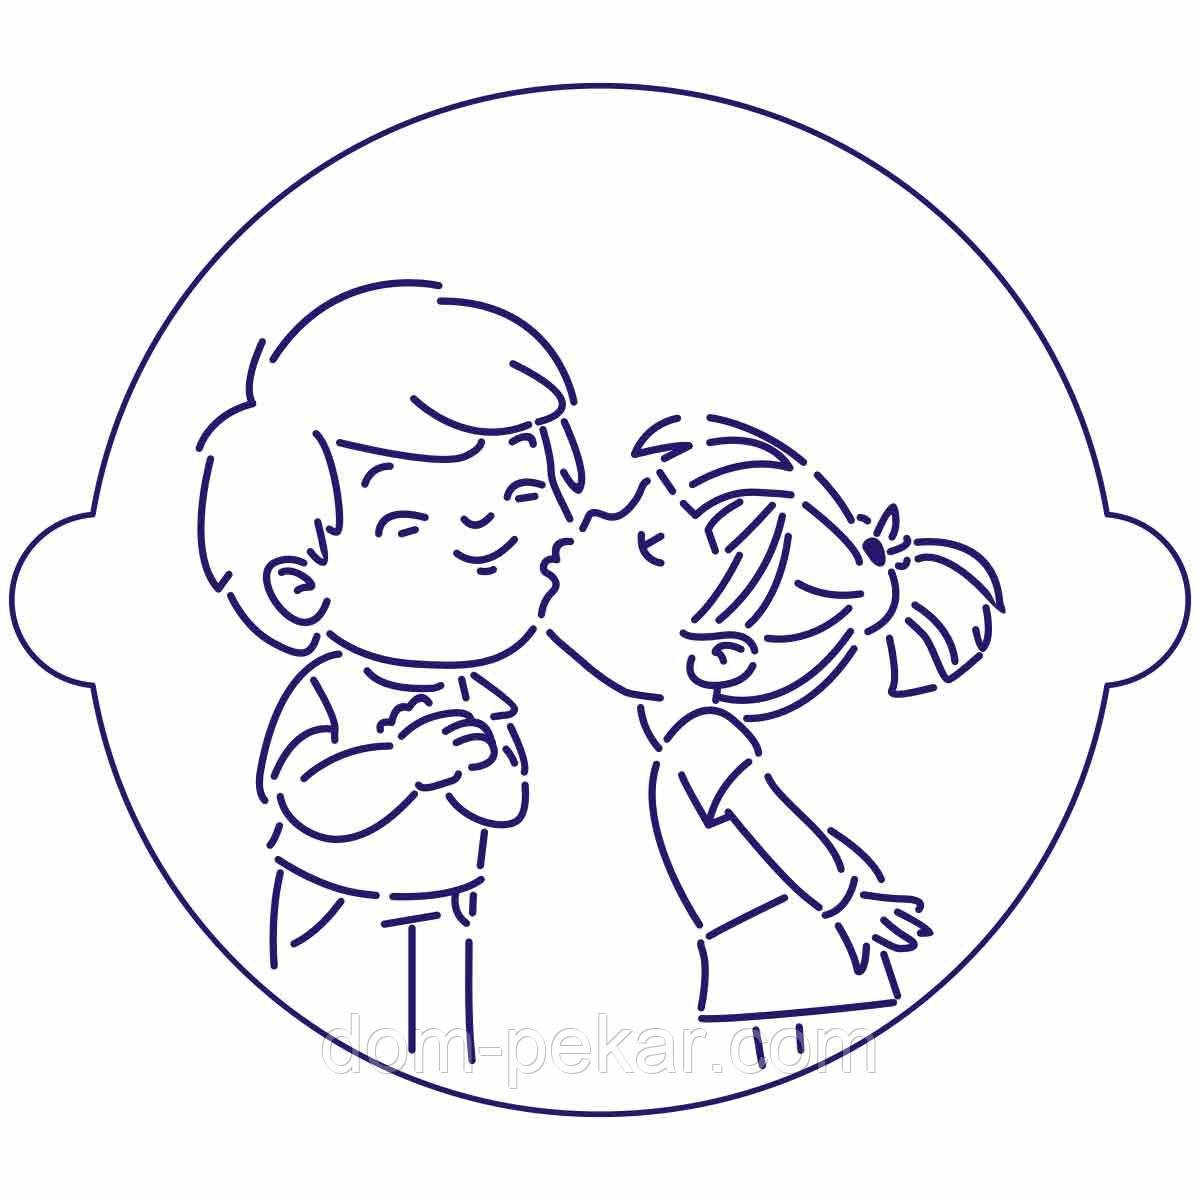 Рисунок на торт мальчик и девочка